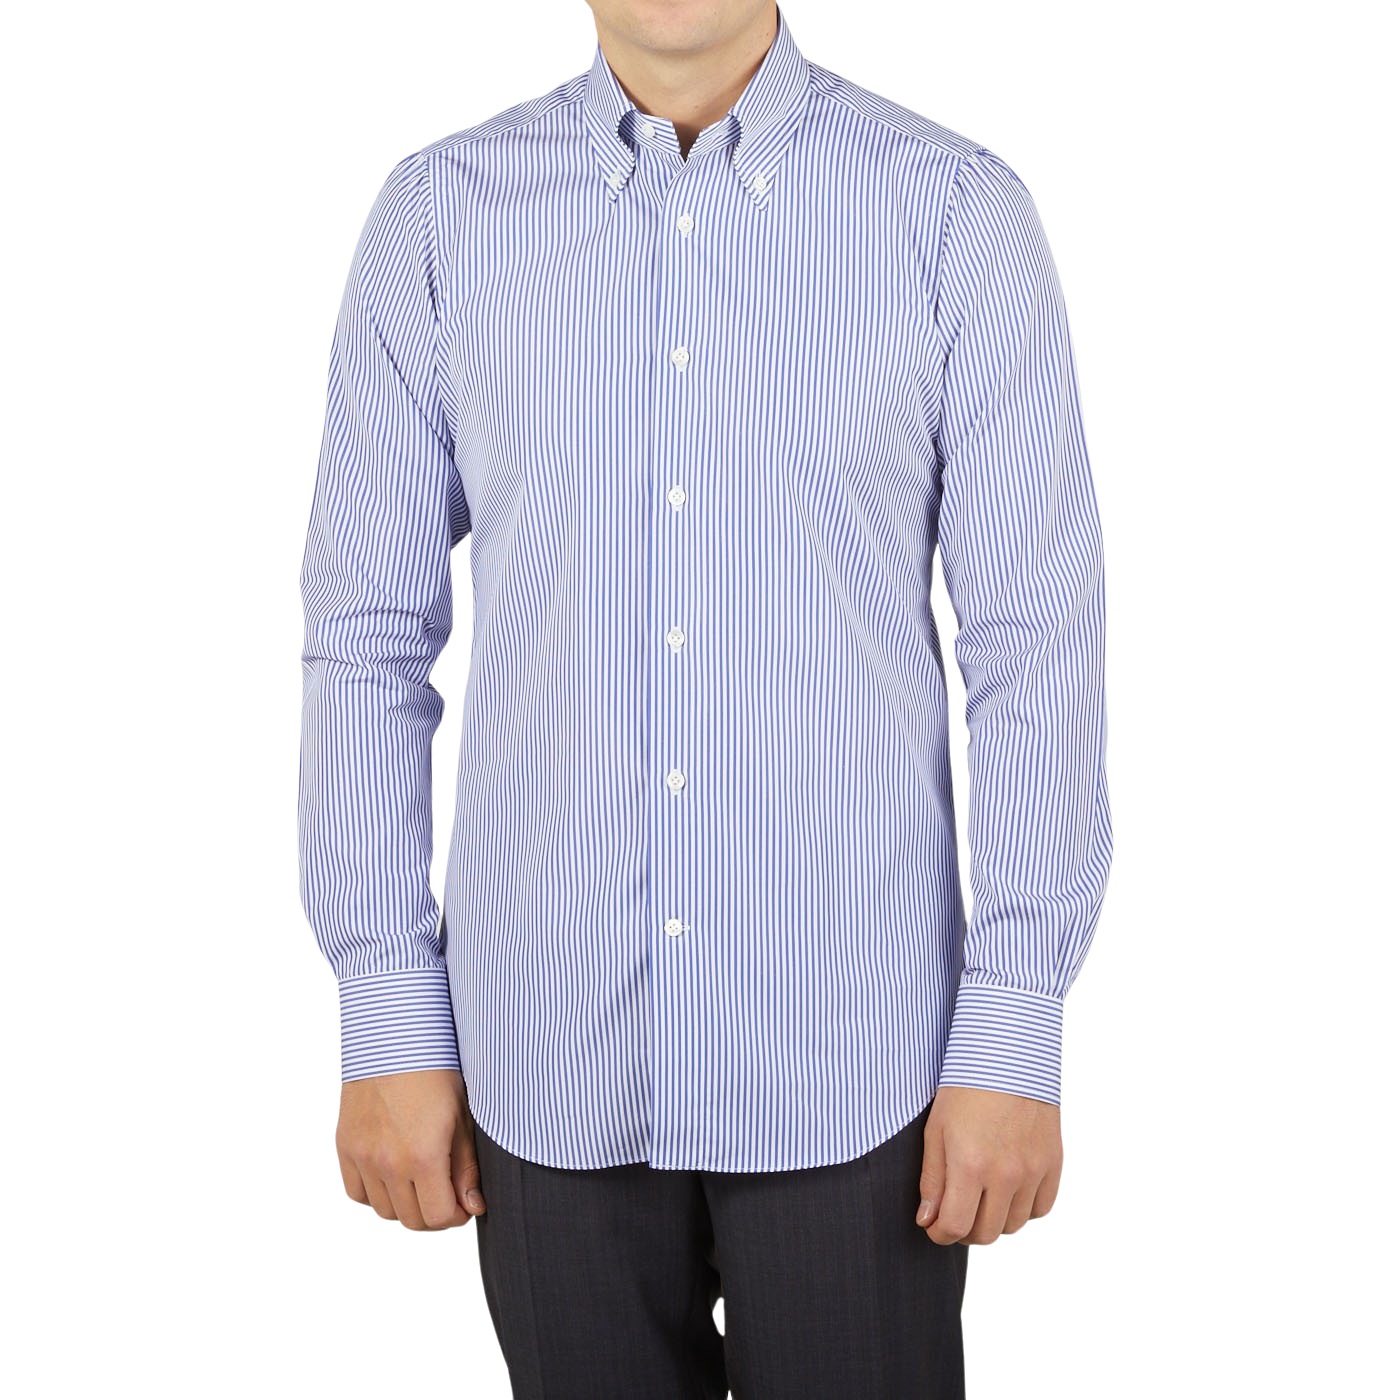 A slim man wearing a Mazzarelli White Blue Striped Cotton BD Slim Shirt.